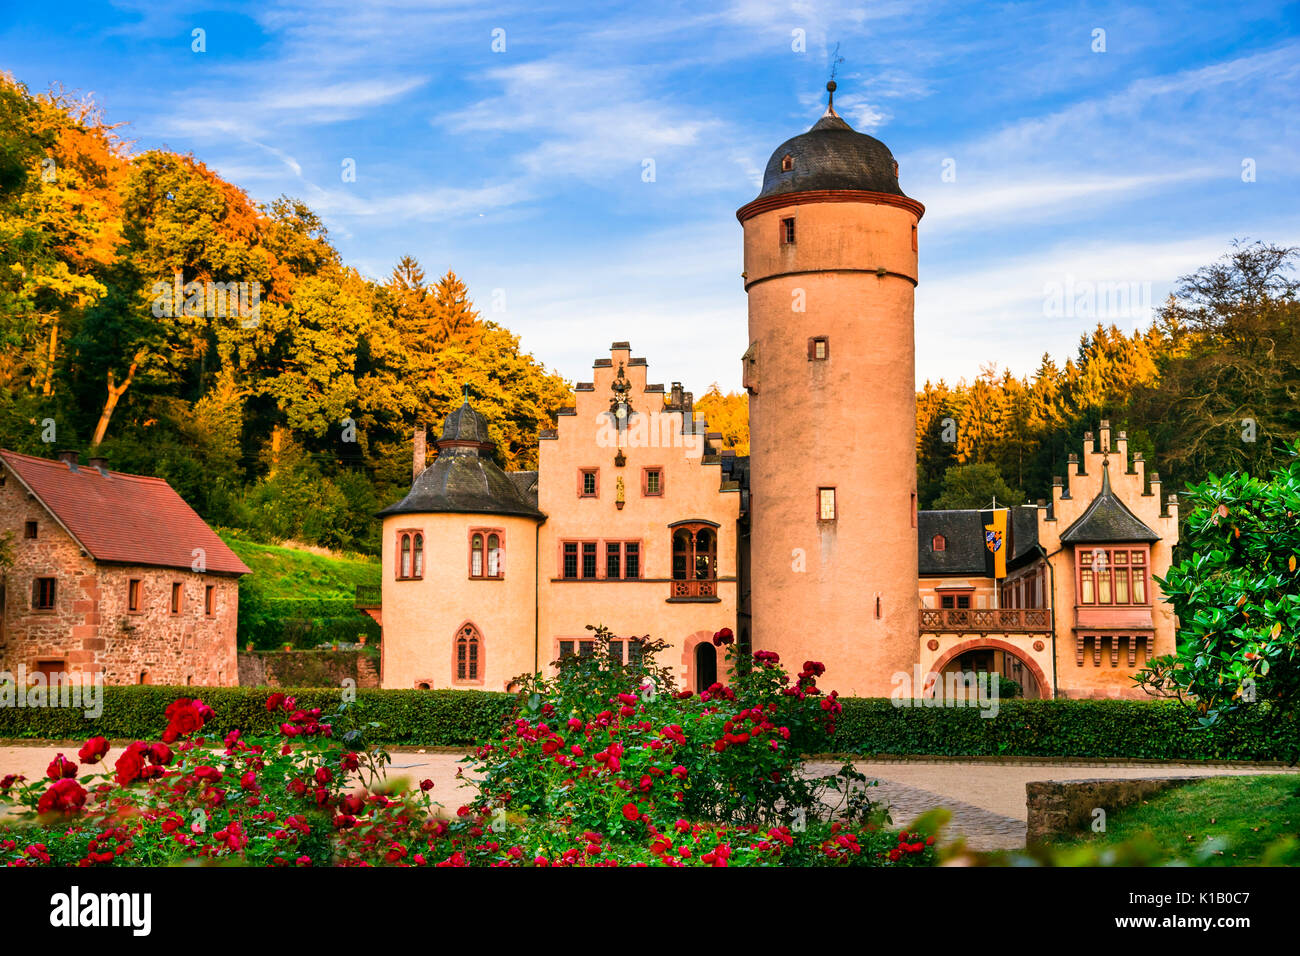 Schöne romantische Schlösser in Deutschland - Schloss Mespelbrunn Stockfoto